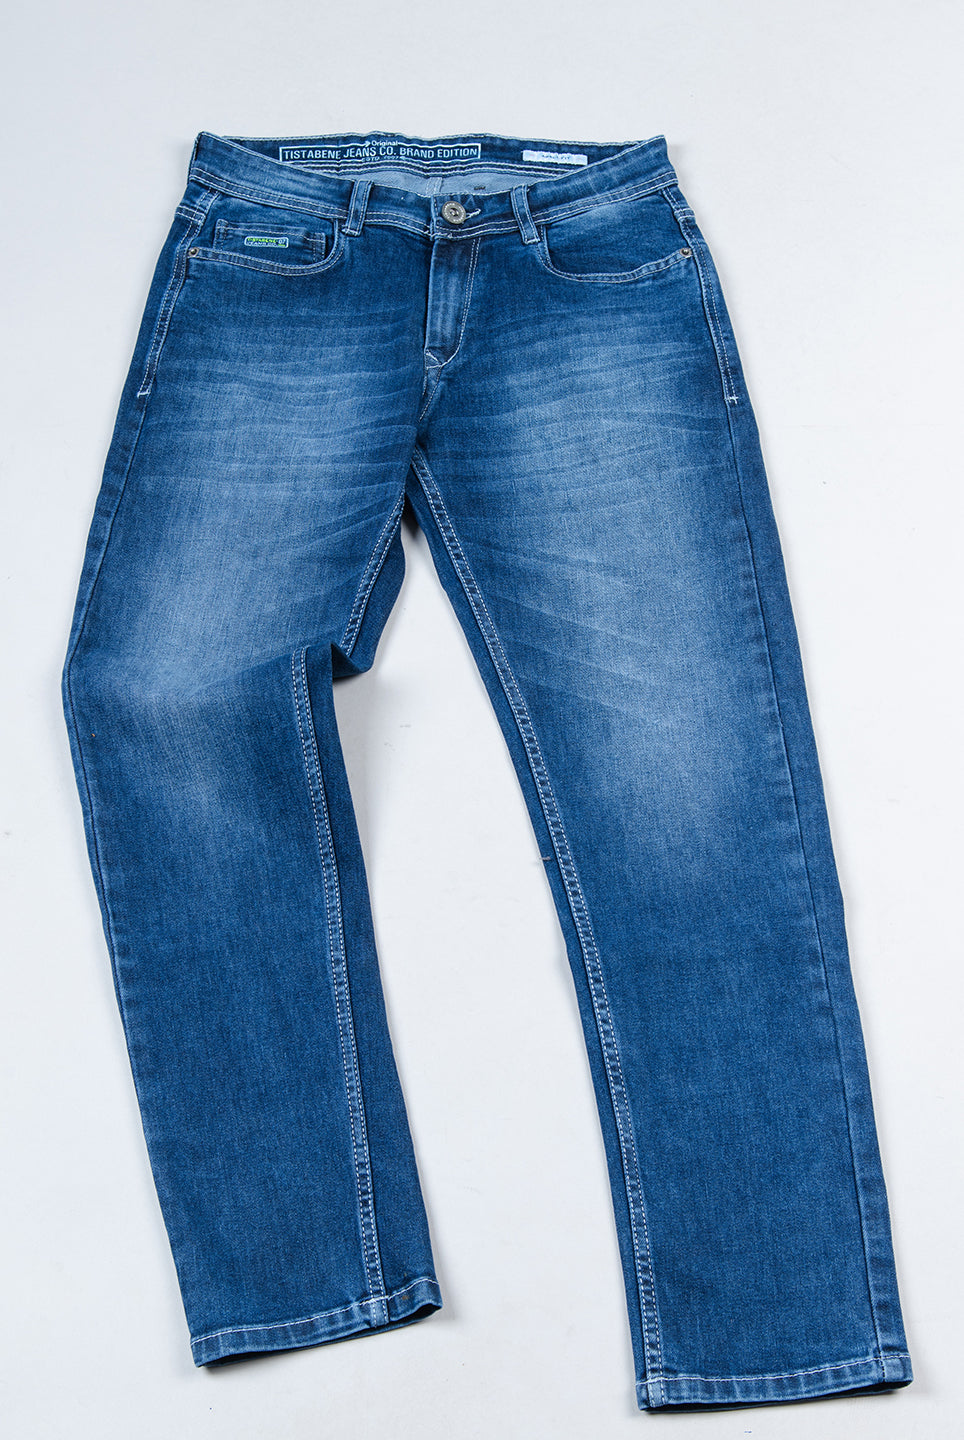 denim jeans images